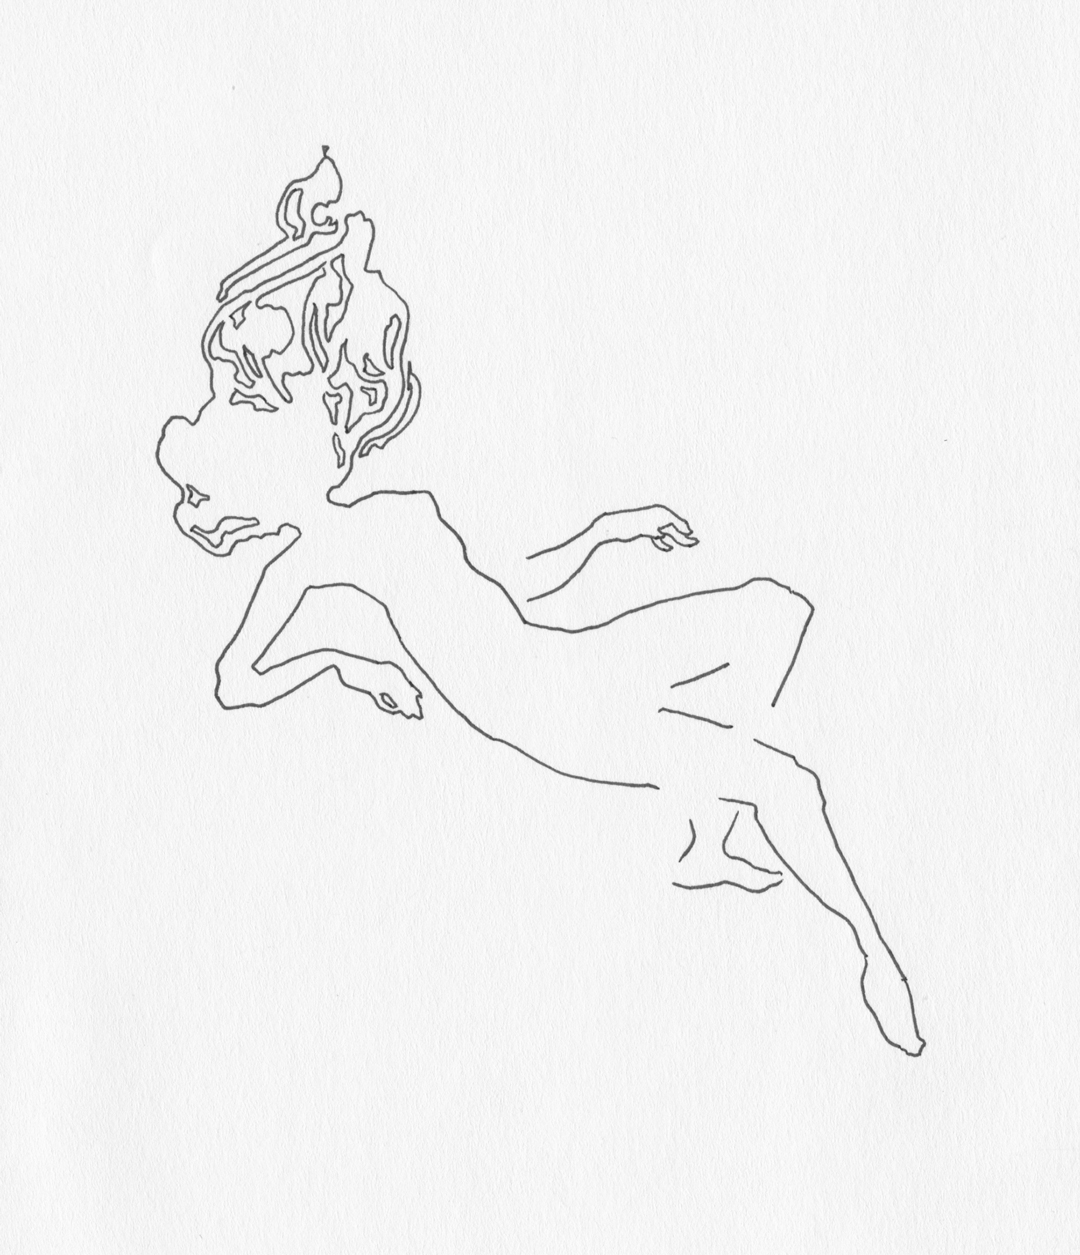 "Falling," Art by Laura Dreyer, drawing in pen.